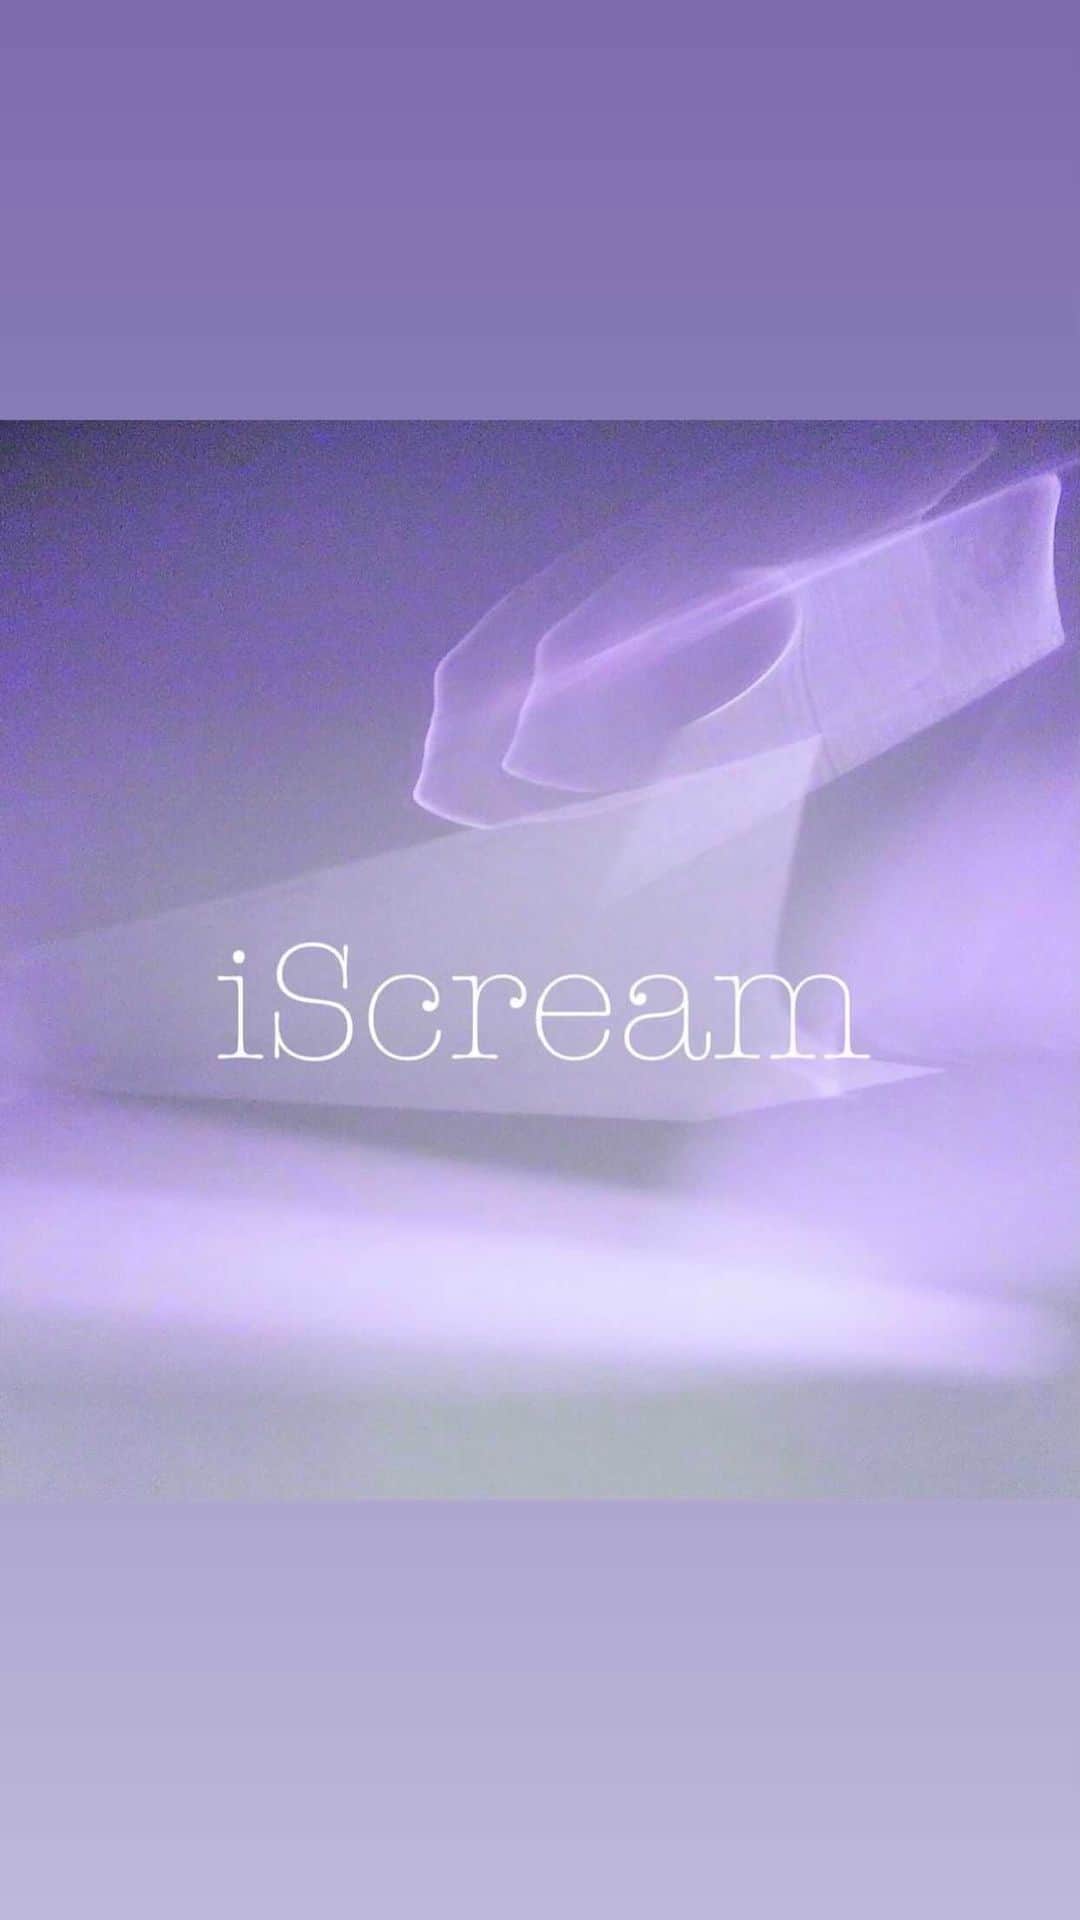 iScreamのインスタグラム